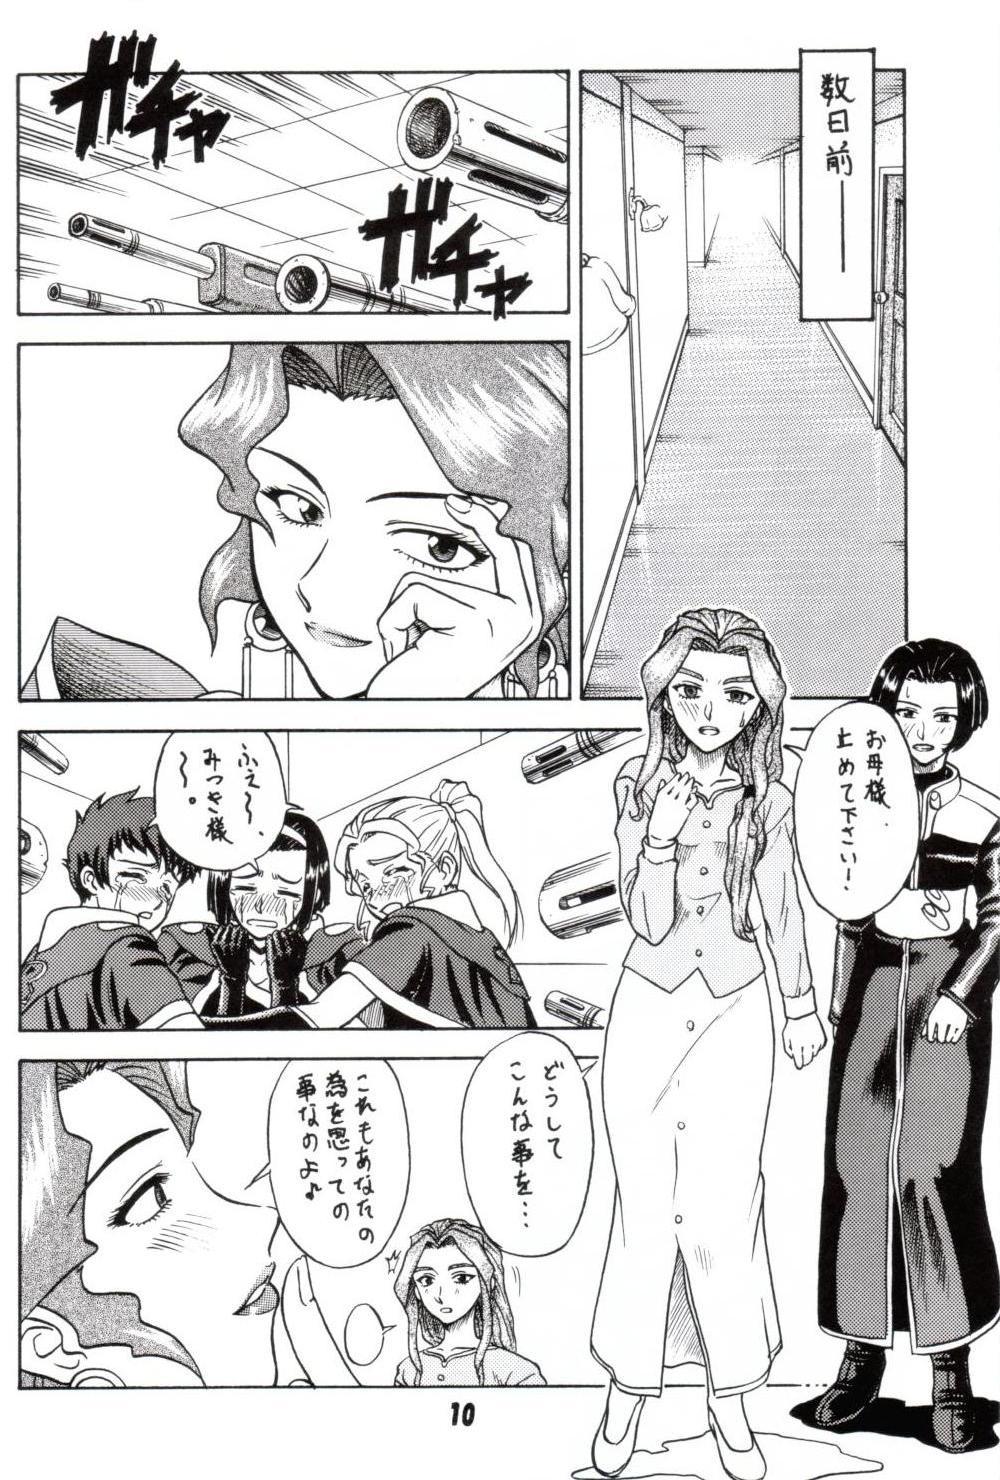 4some Gyokusai Kakugo 2 - Dual parallel trouble adventure Nena - Page 7